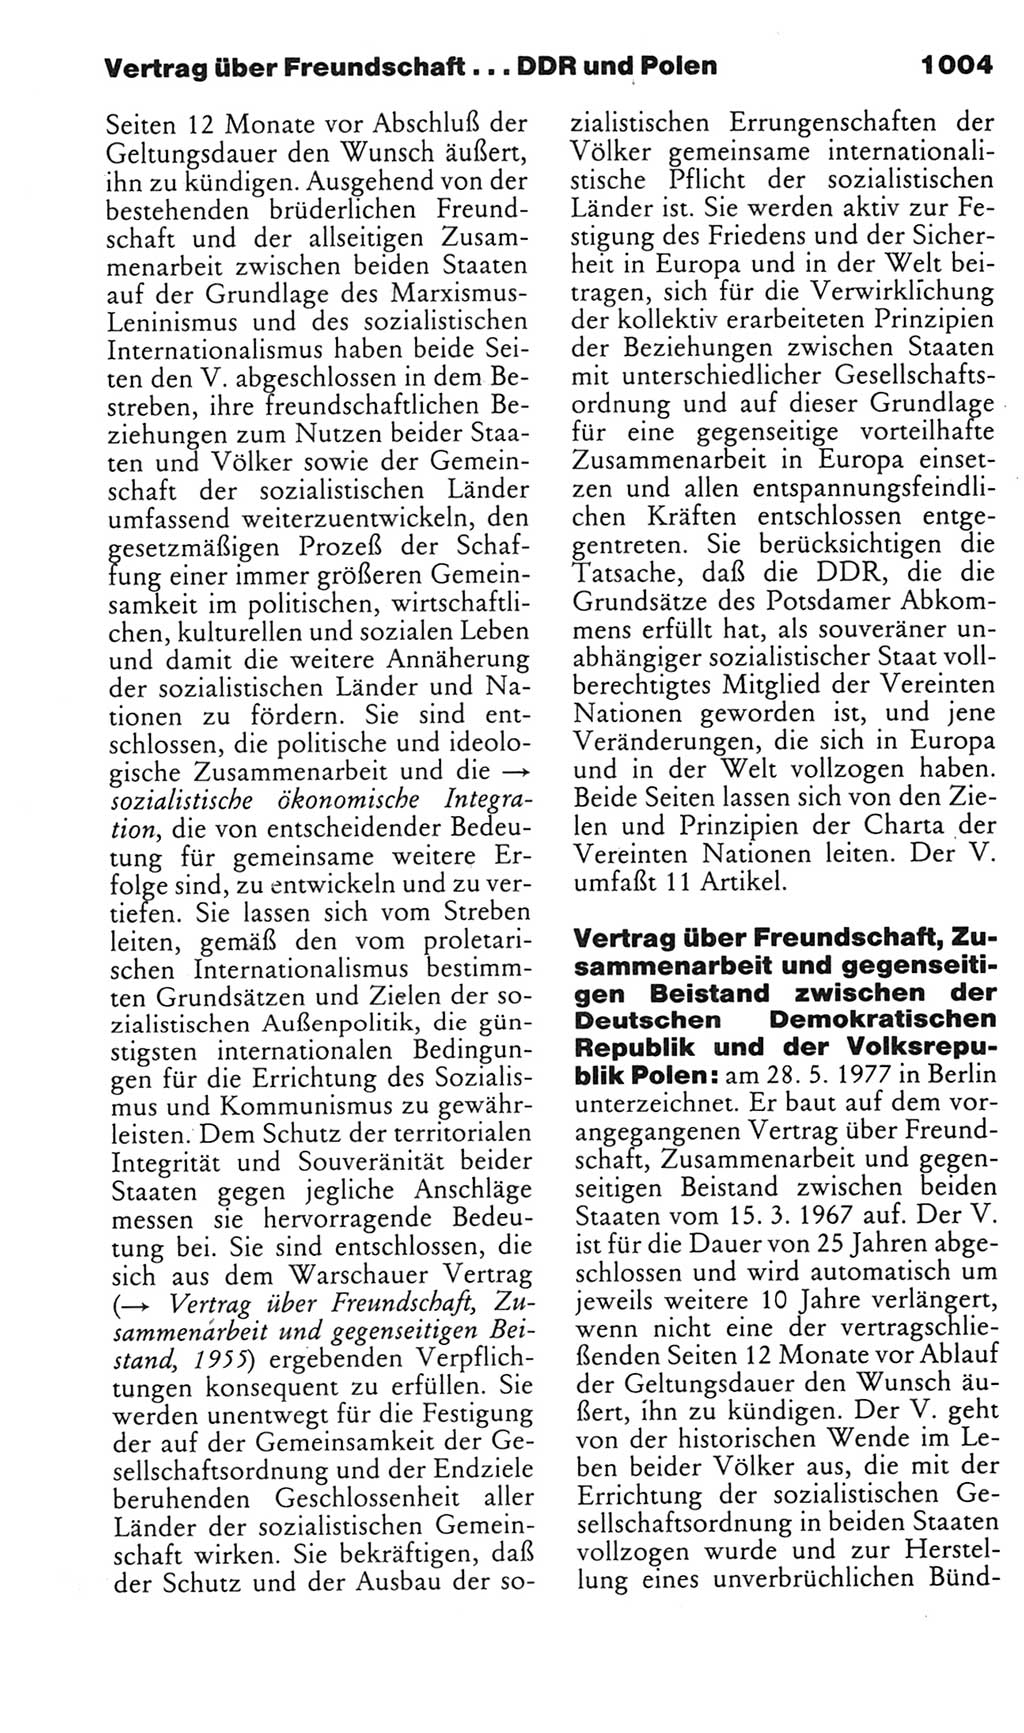 Kleines politisches Wörterbuch [Deutsche Demokratische Republik (DDR)] 1985, Seite 1004 (Kl. pol. Wb. DDR 1985, S. 1004)